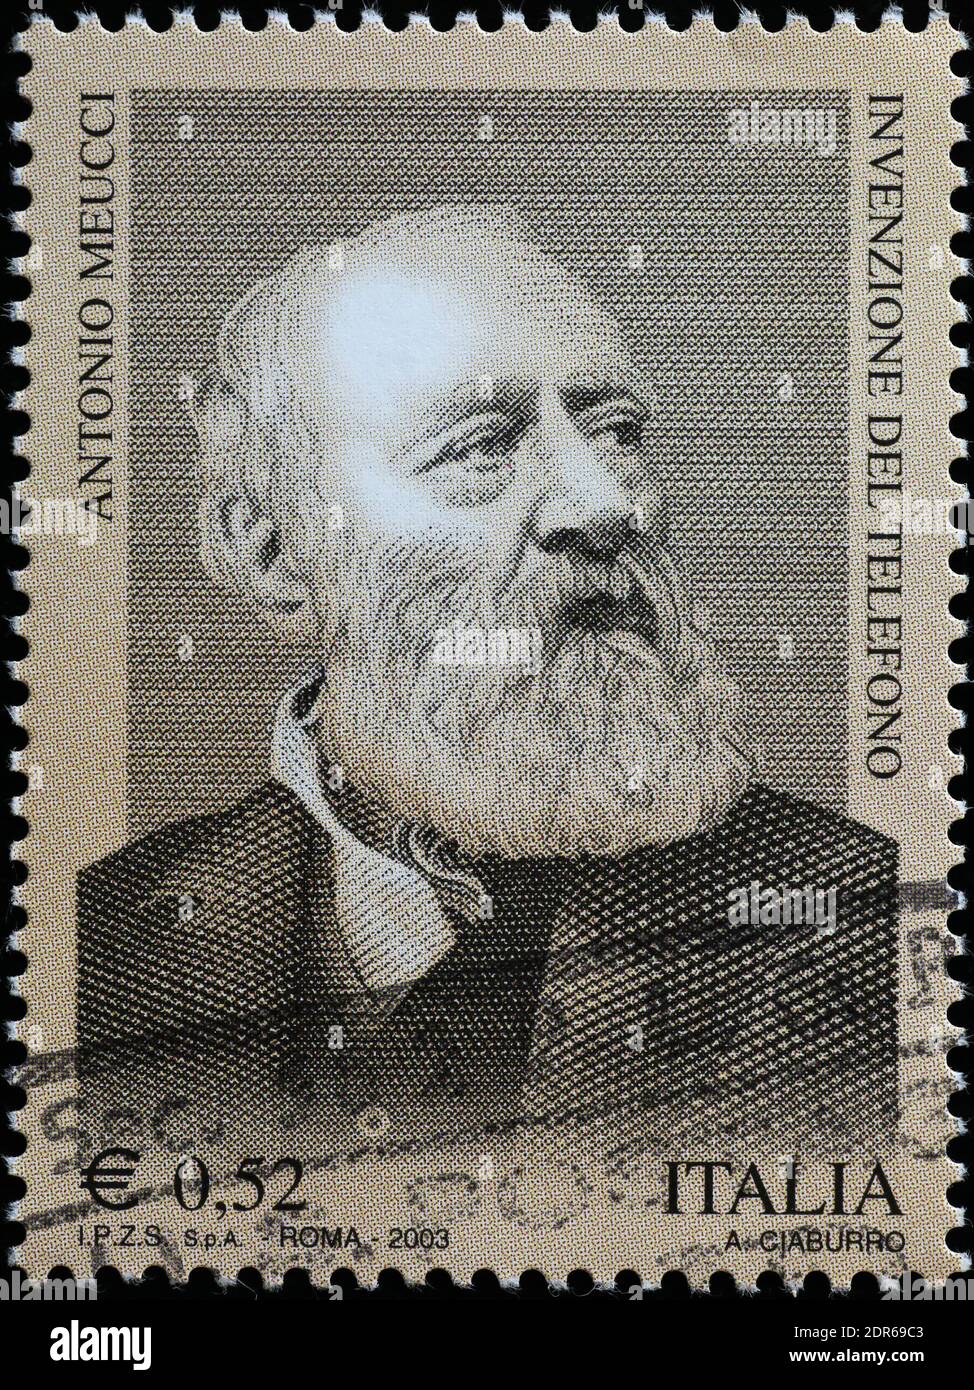 Antonio Meucci, inventeur du téléphone, sur timbre italien Banque D'Images